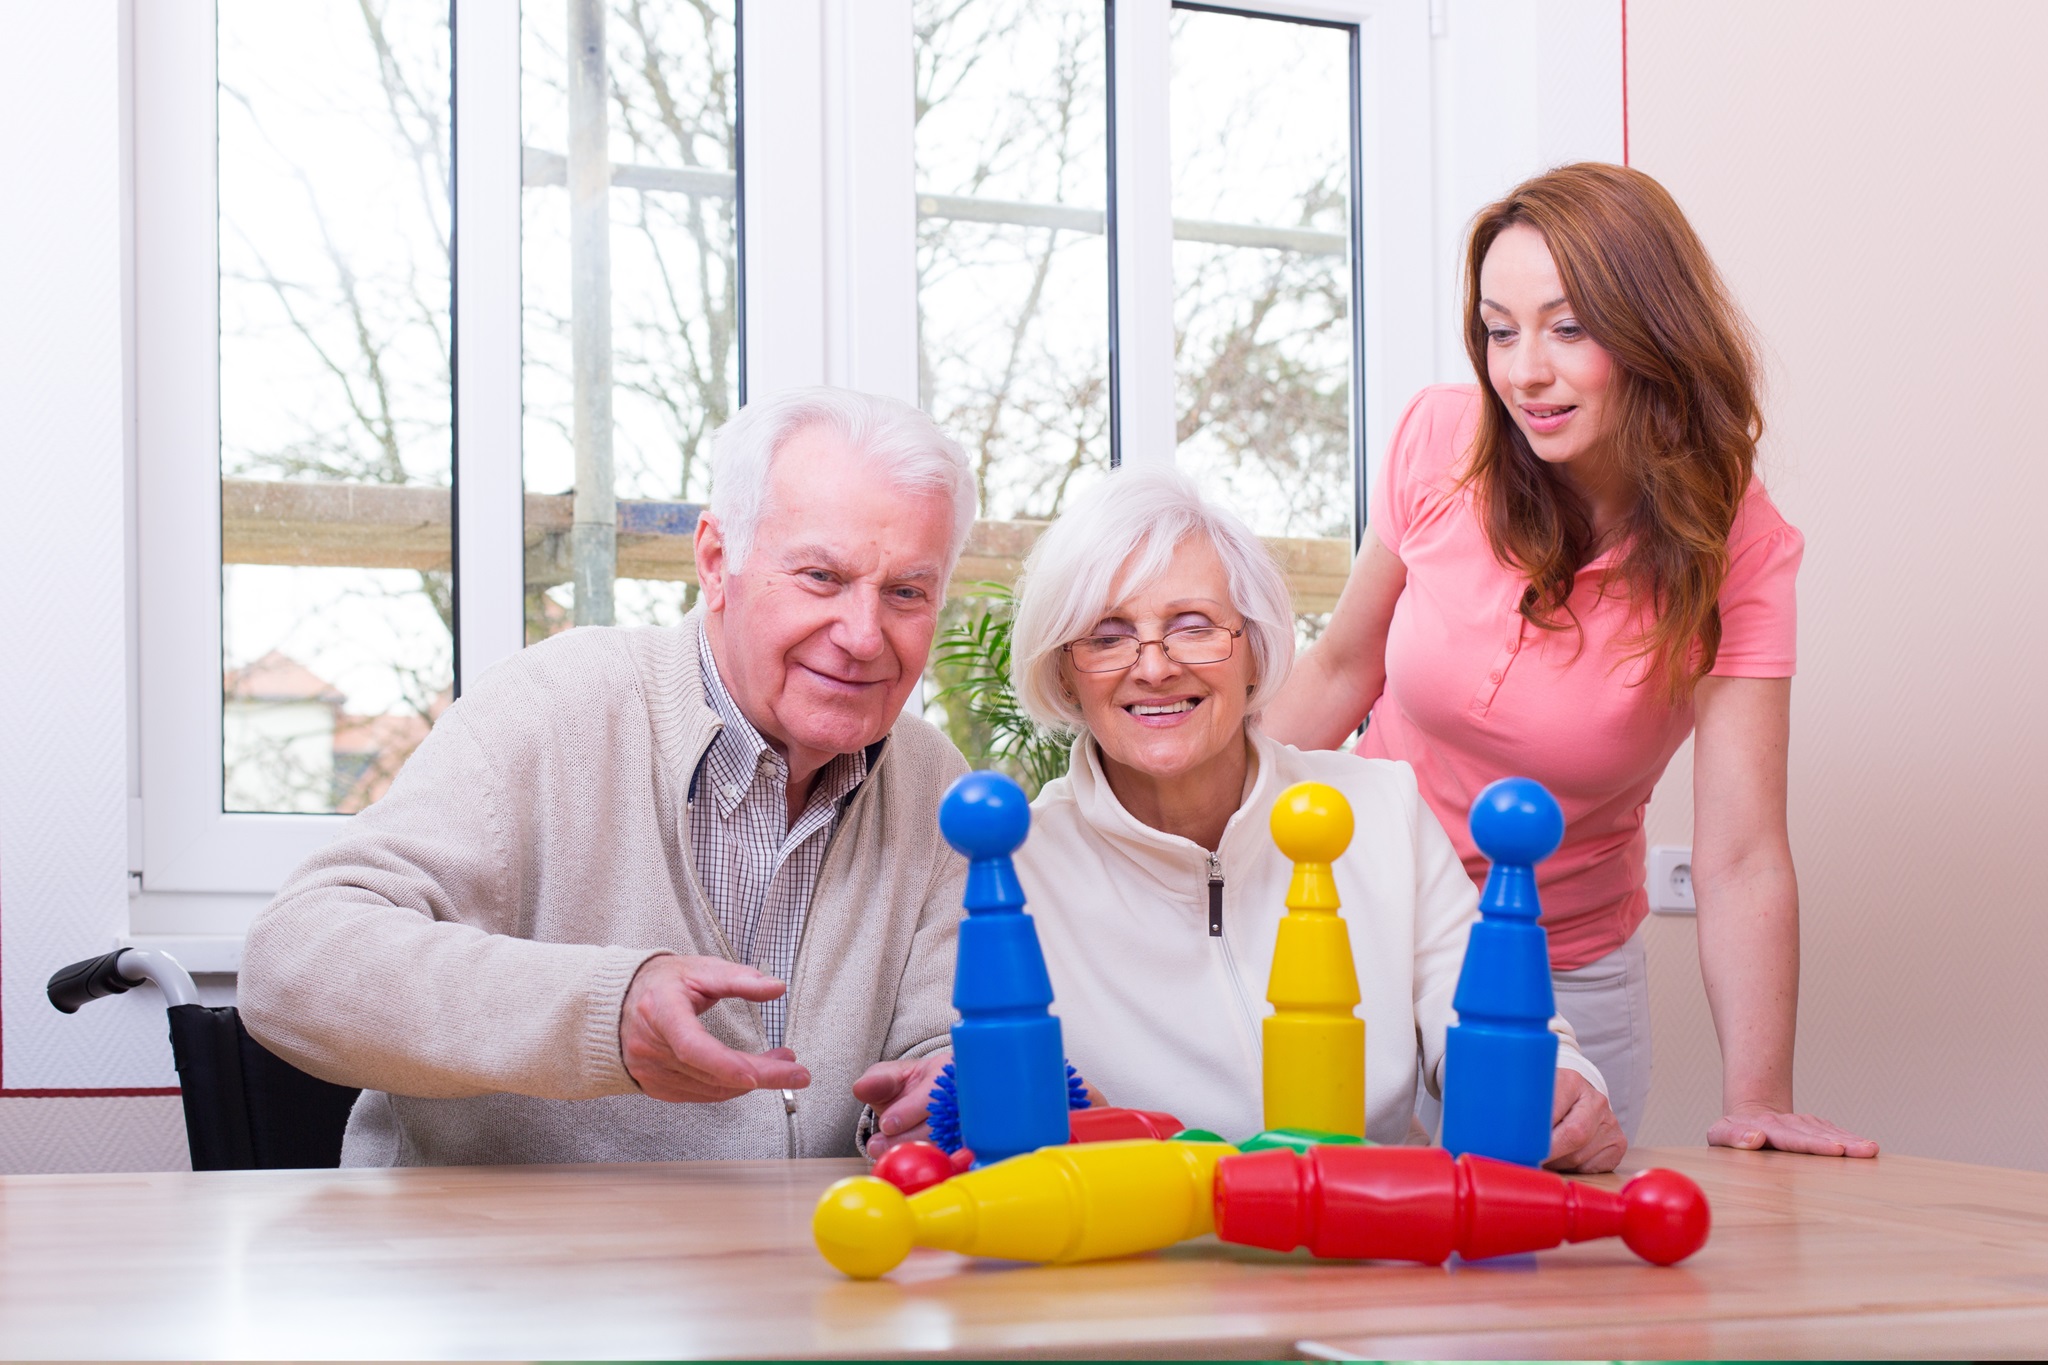 Foto: Senioren spielen mit bunten Kegeln, Ergotherapeutin steht zuschauend daneben, Bildnachweis: drubig-photo auf Adobe Stock, https://stock.adobe.com/de/images/gluckliches-seniorenpaar-spielt-kegeln/63351680